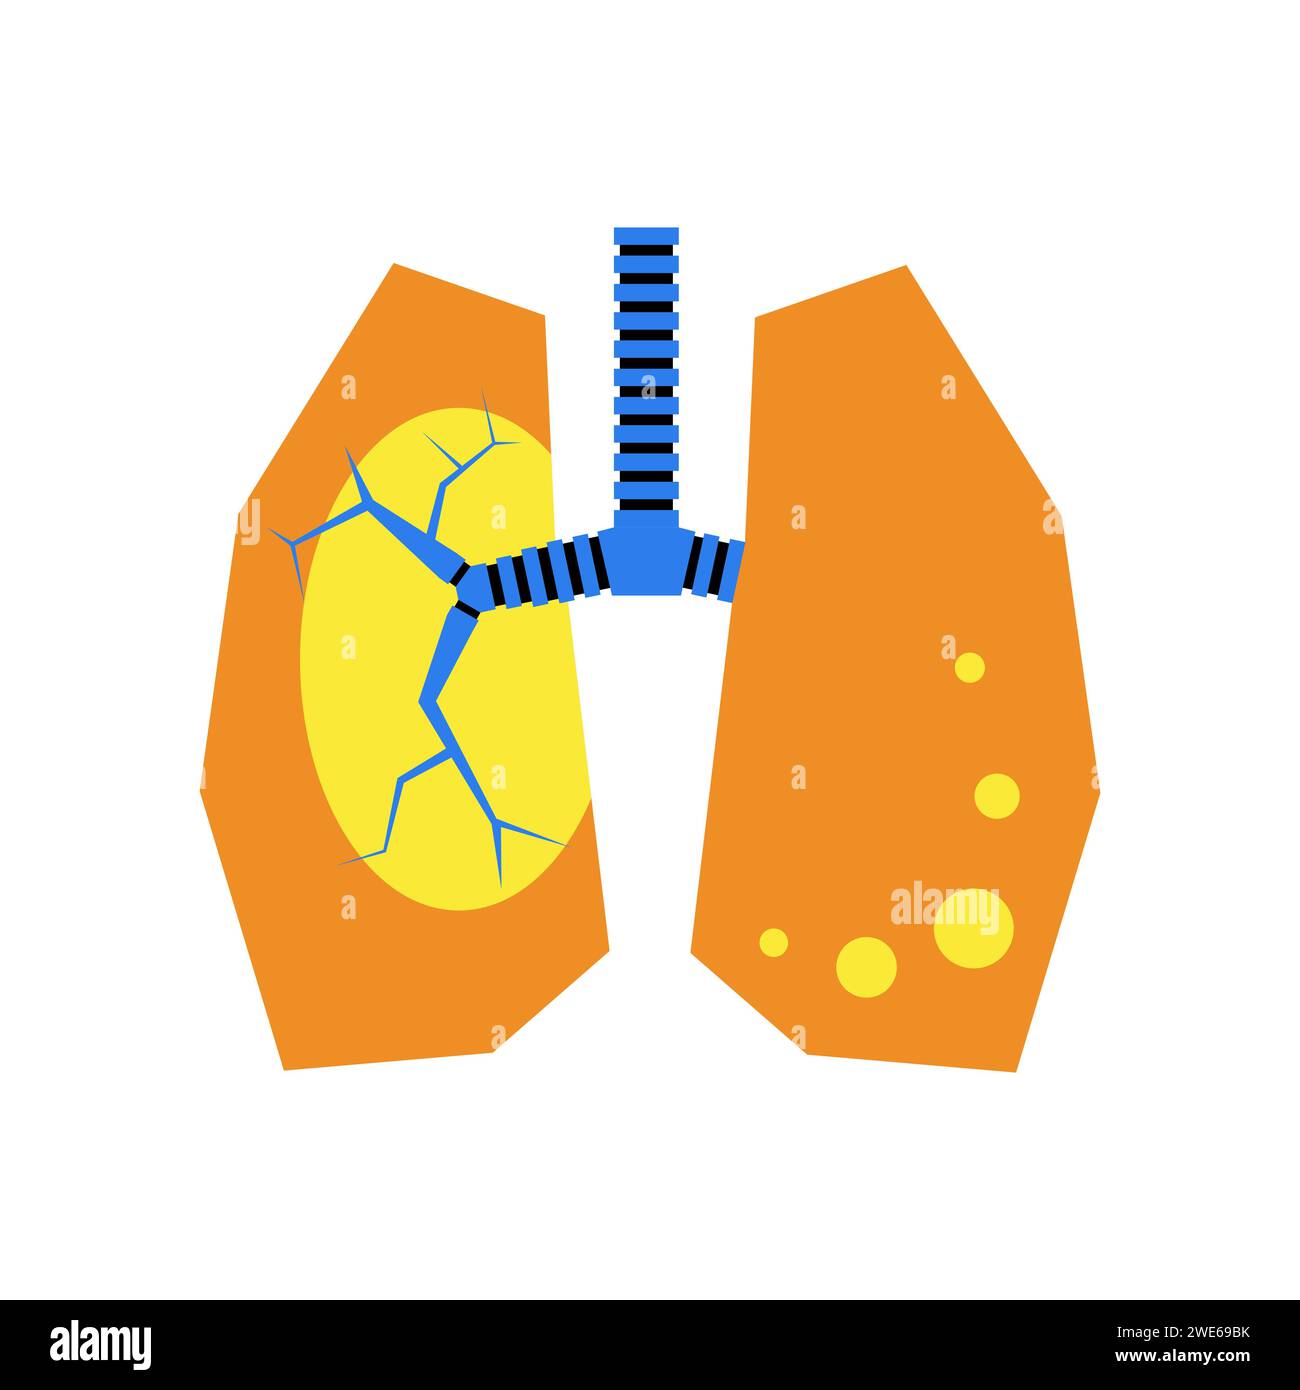 Conception de l'anatomie pulmonaire humaine en patchwork géométrique. Composition graphique pour publicité, bannière, design d'emballage. Illustration vectorielle Illustration de Vecteur